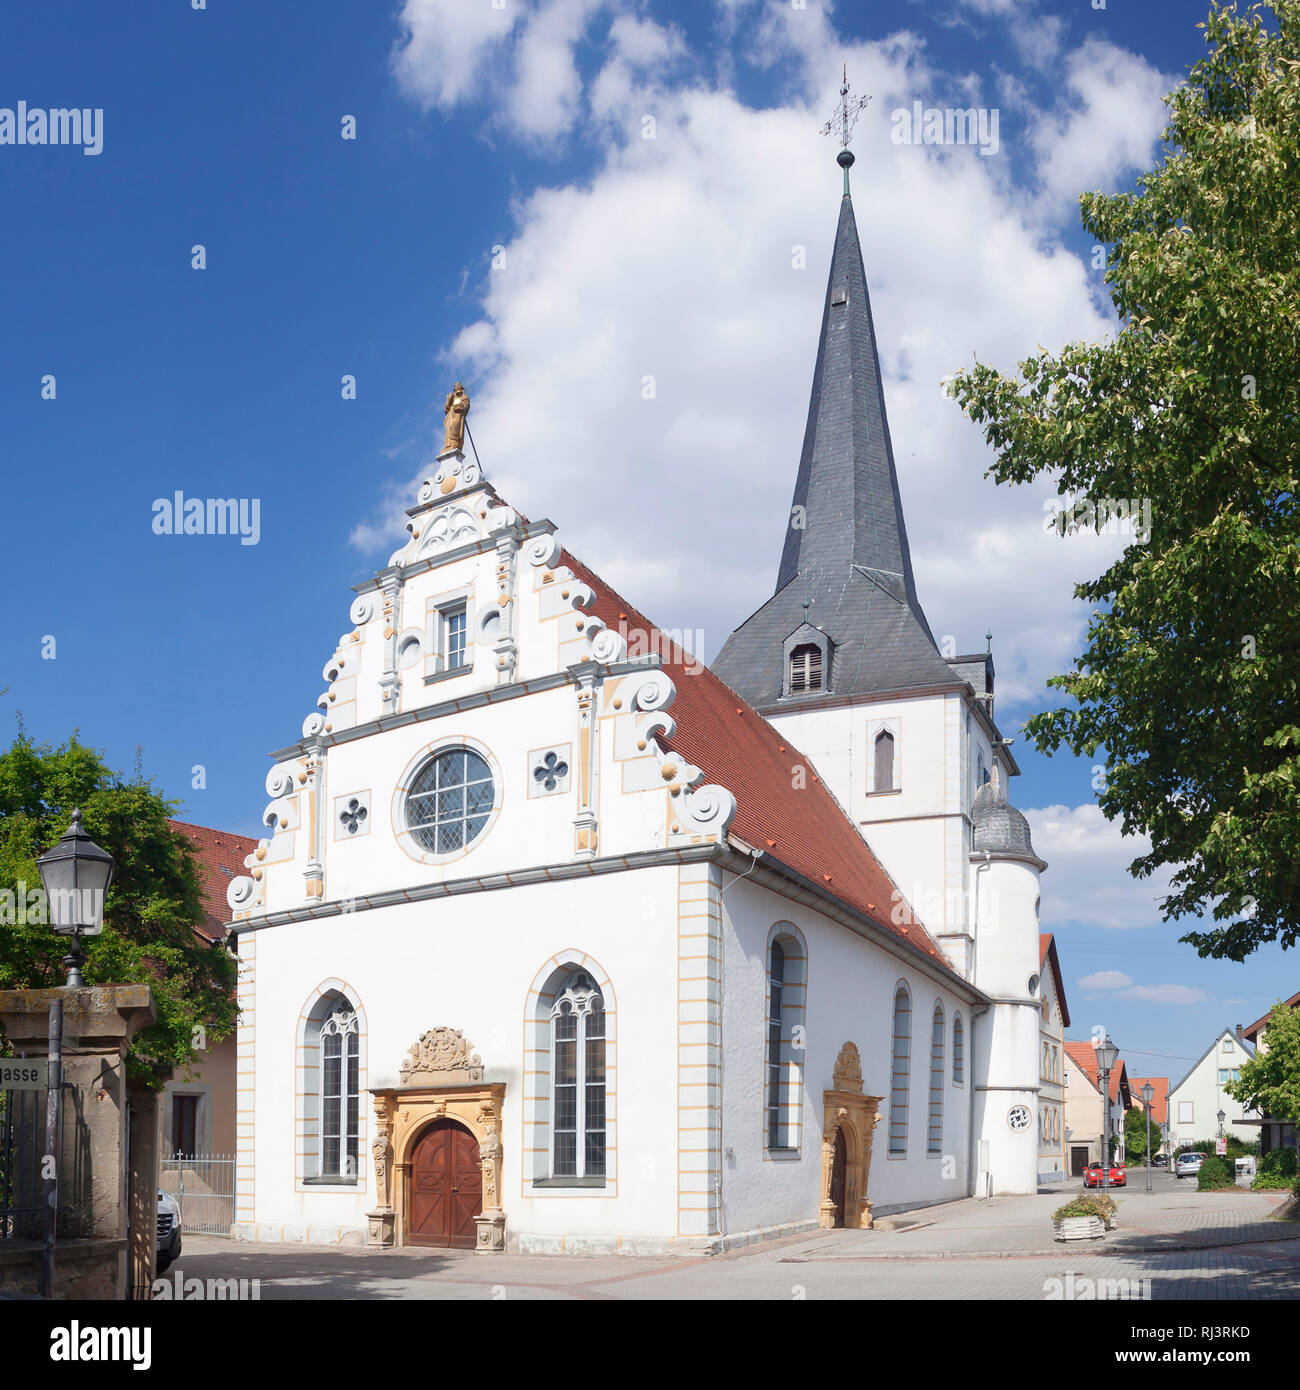 Stadtkirche St. Salvator, Neckarbischofsheim, Rhein Neckar Kreis, Baden-Württemberg, Deutschland Stock Photo